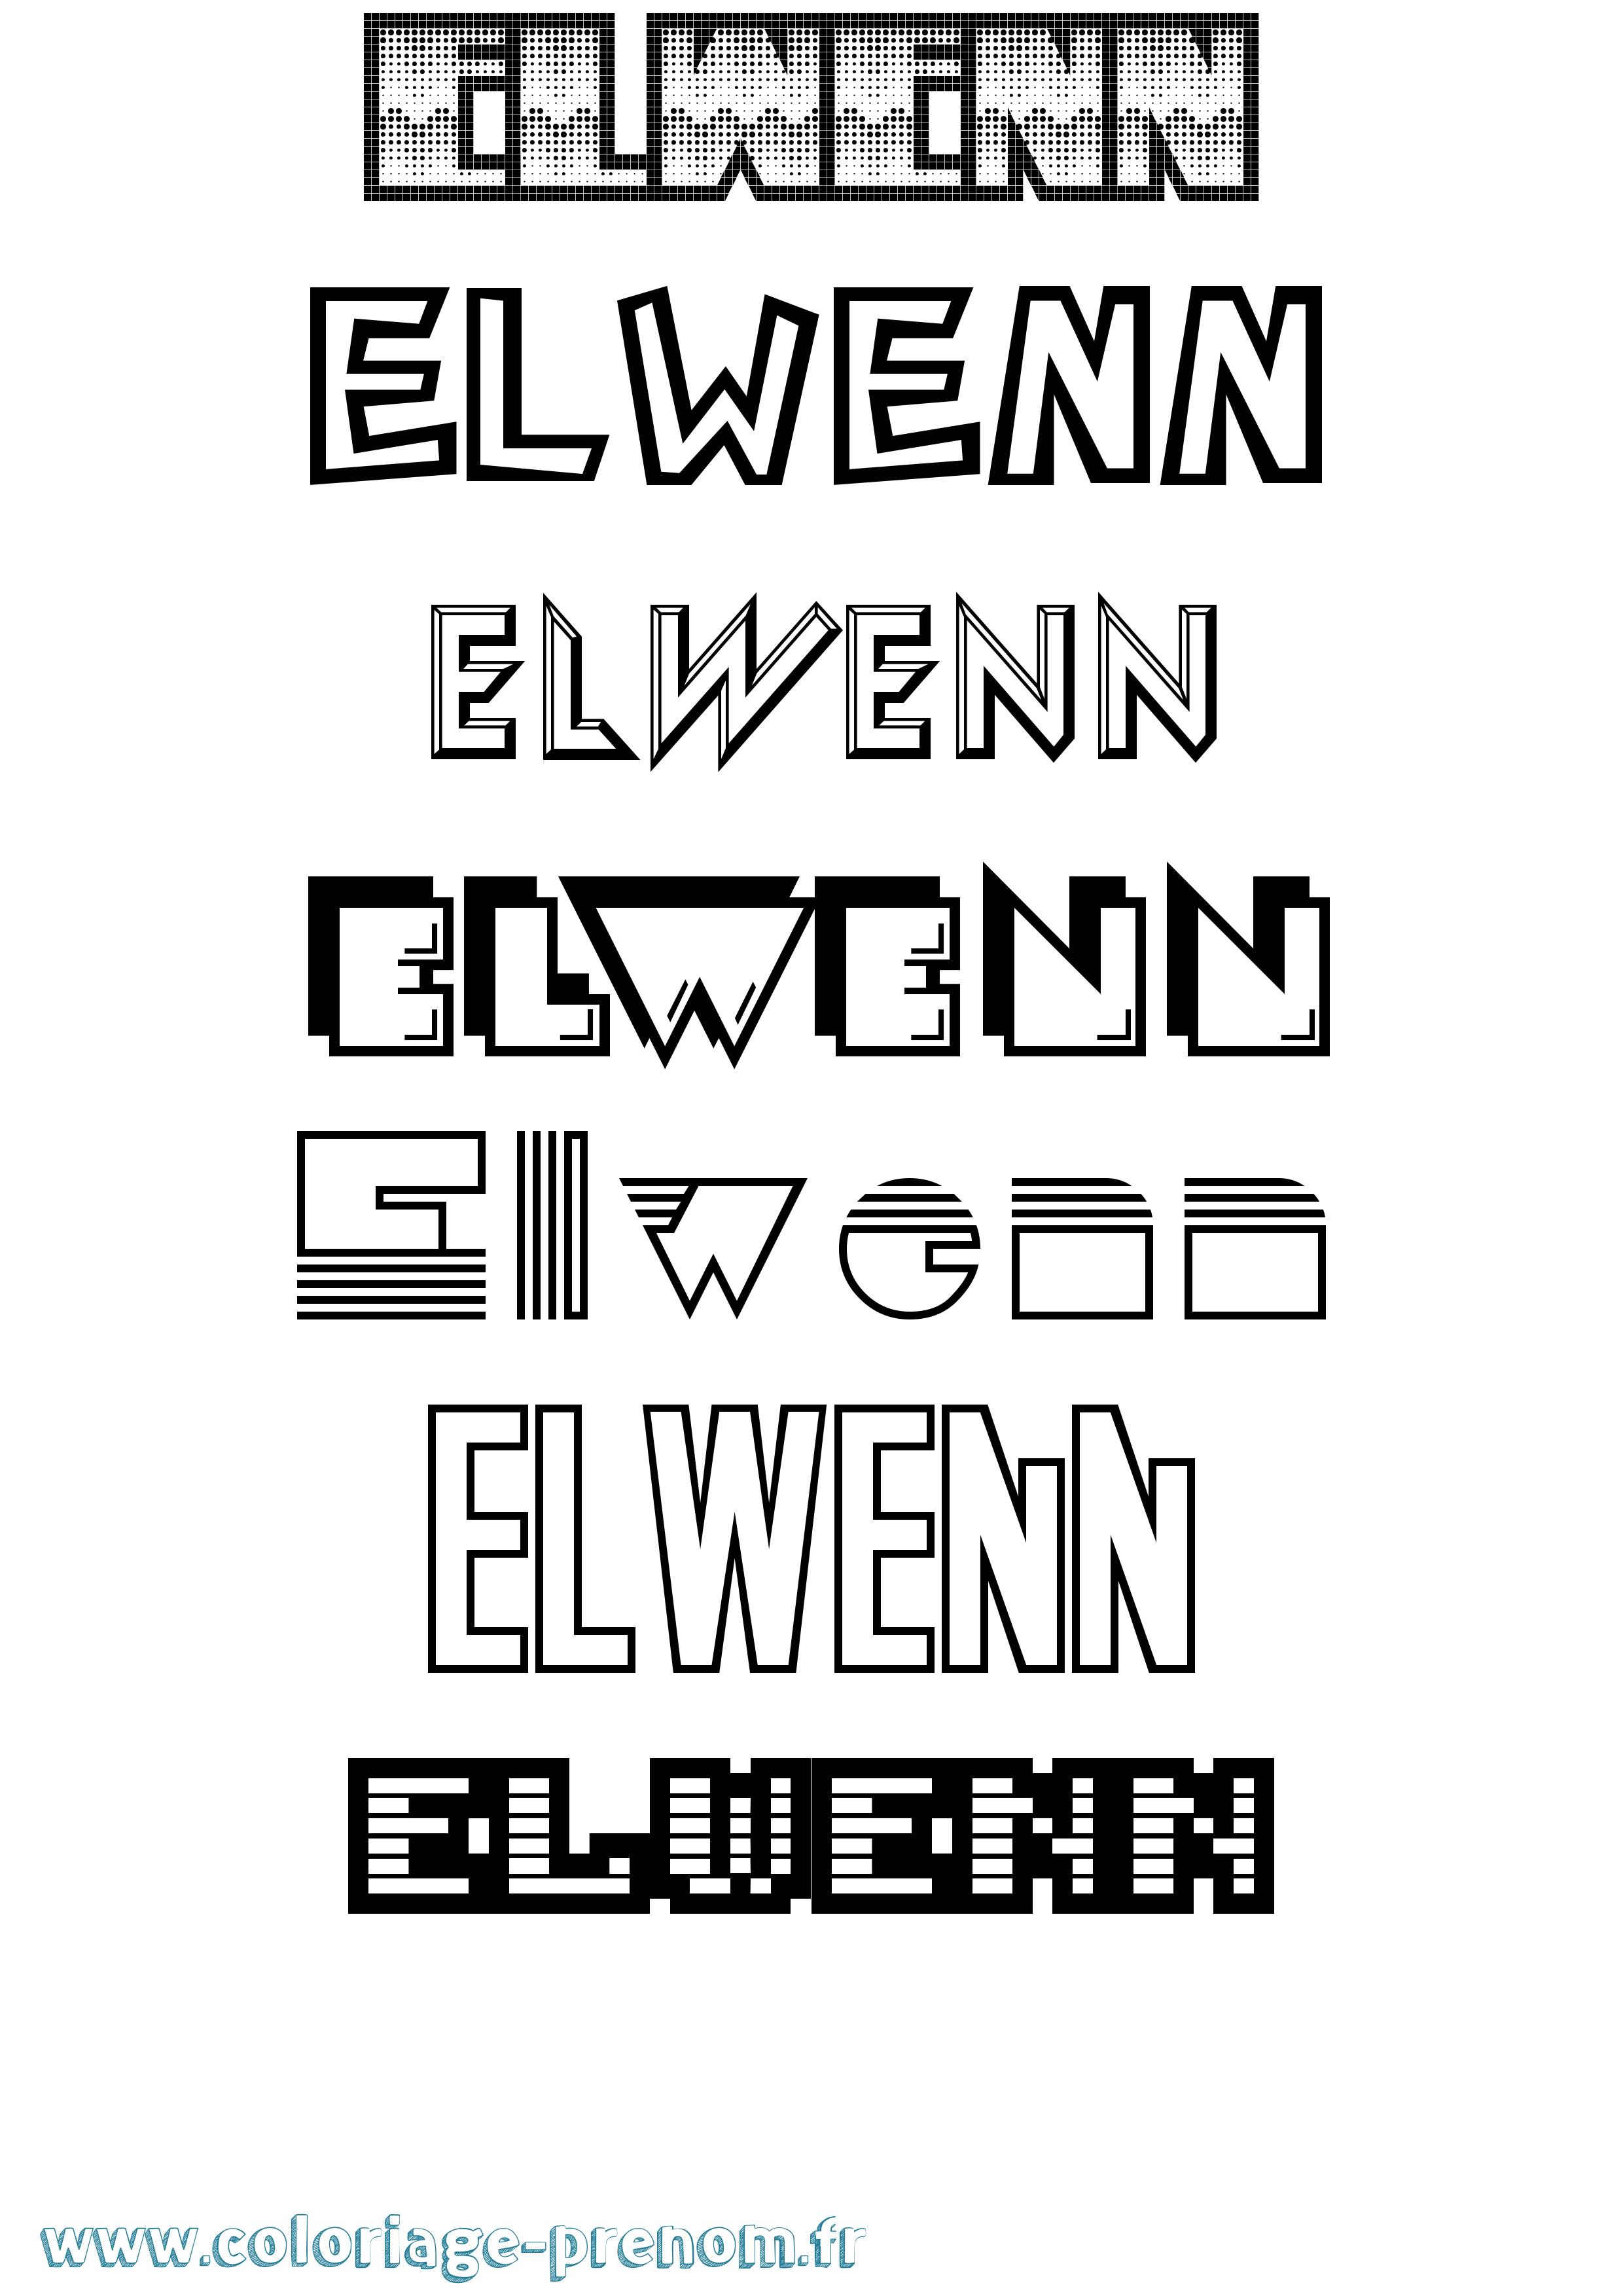 Coloriage prénom Elwenn Jeux Vidéos